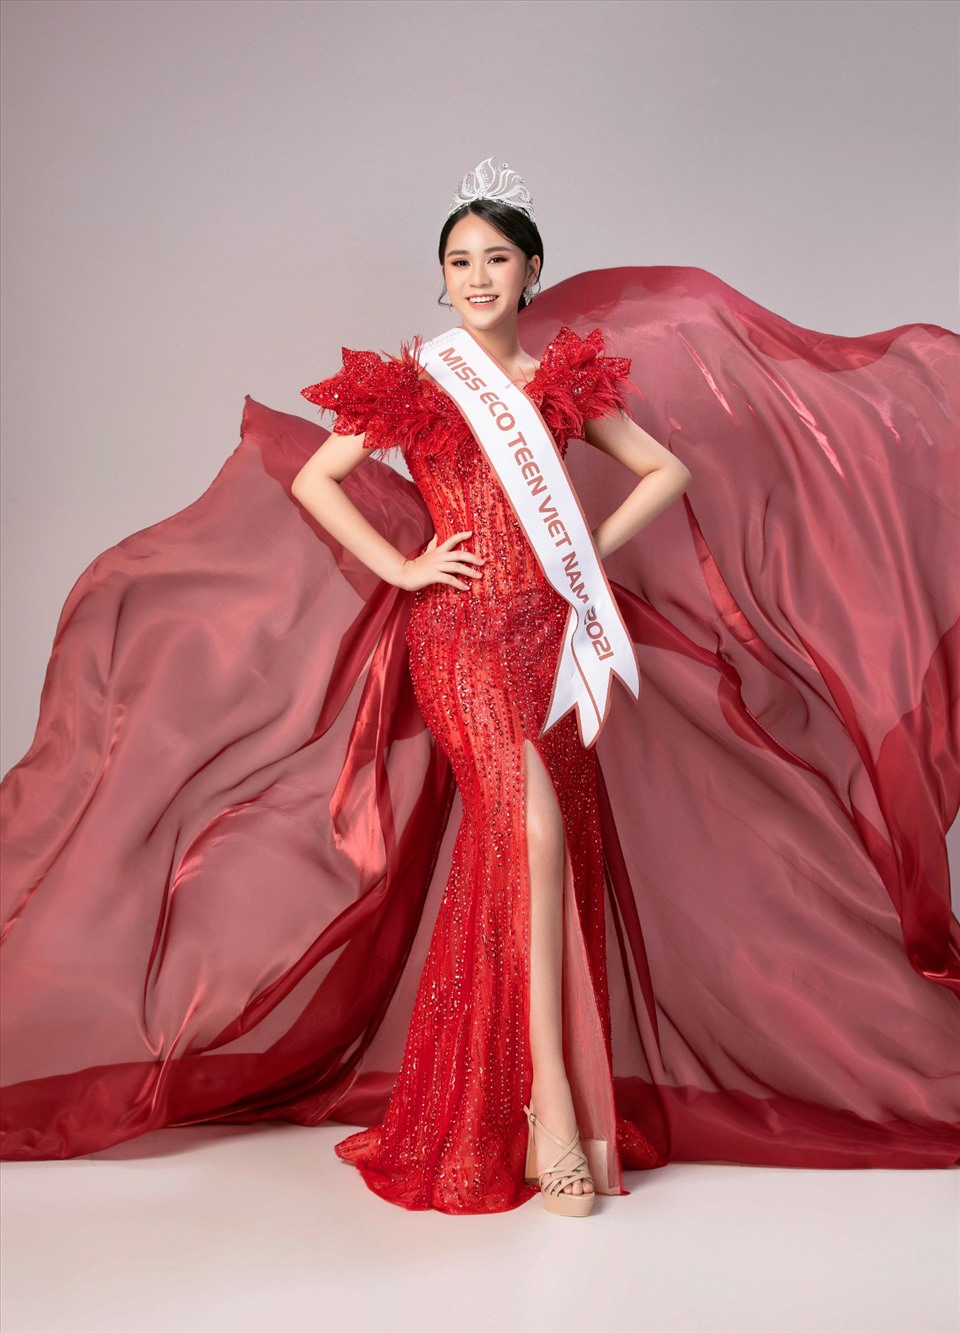 Ngoài Thùy Tiên, Nguyễn Minh Tuấn cũng thiết kế đầm cho Kim Duyên tại Miss Universe 2021 và Đỗ Thị Hà tại Miss World 2021, với mong muốn các người đẹp sẽ thật lộng lẫy và vững tin trên hành trình chinh phục những đỉnh cao của nhan sắc tại đấu trường Quốc tế. Ảnh: NSCC.